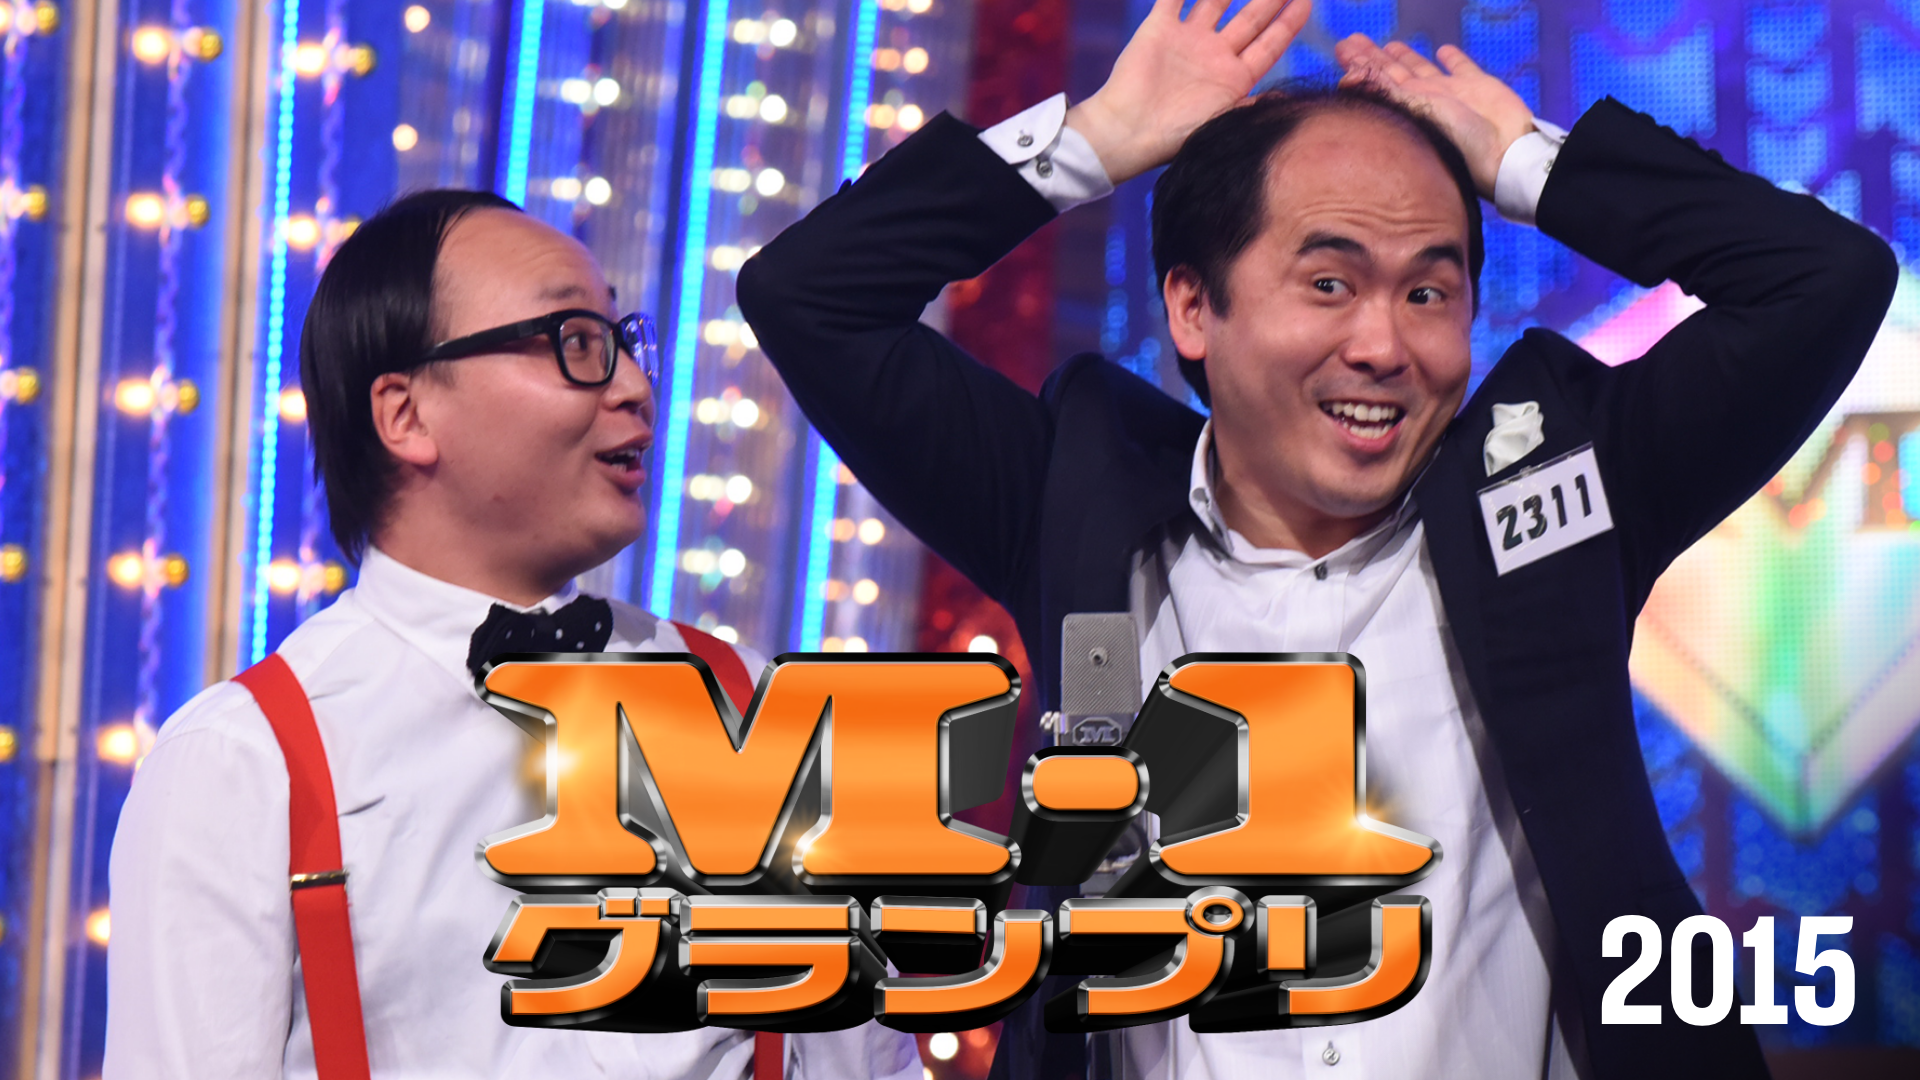 M-1グランプリ2015(TV番組・エンタメ / 2015) - 動画配信 | U-NEXT 31 ...